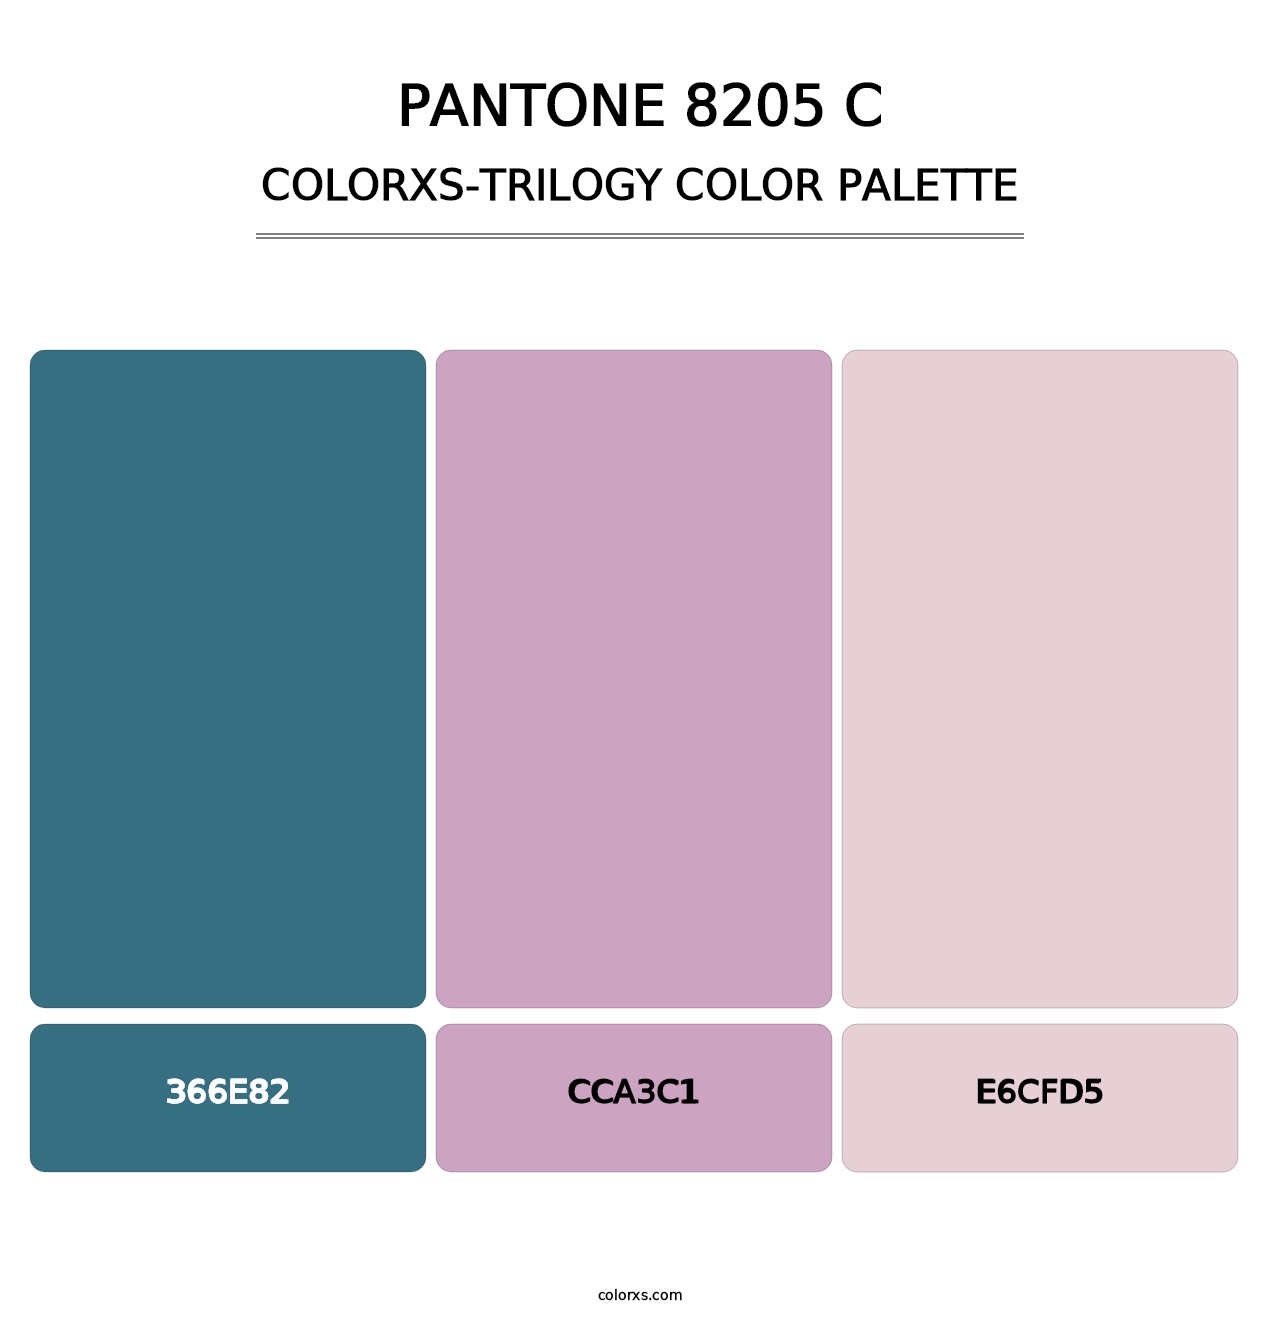 PANTONE 8205 C - Colorxs Trilogy Palette